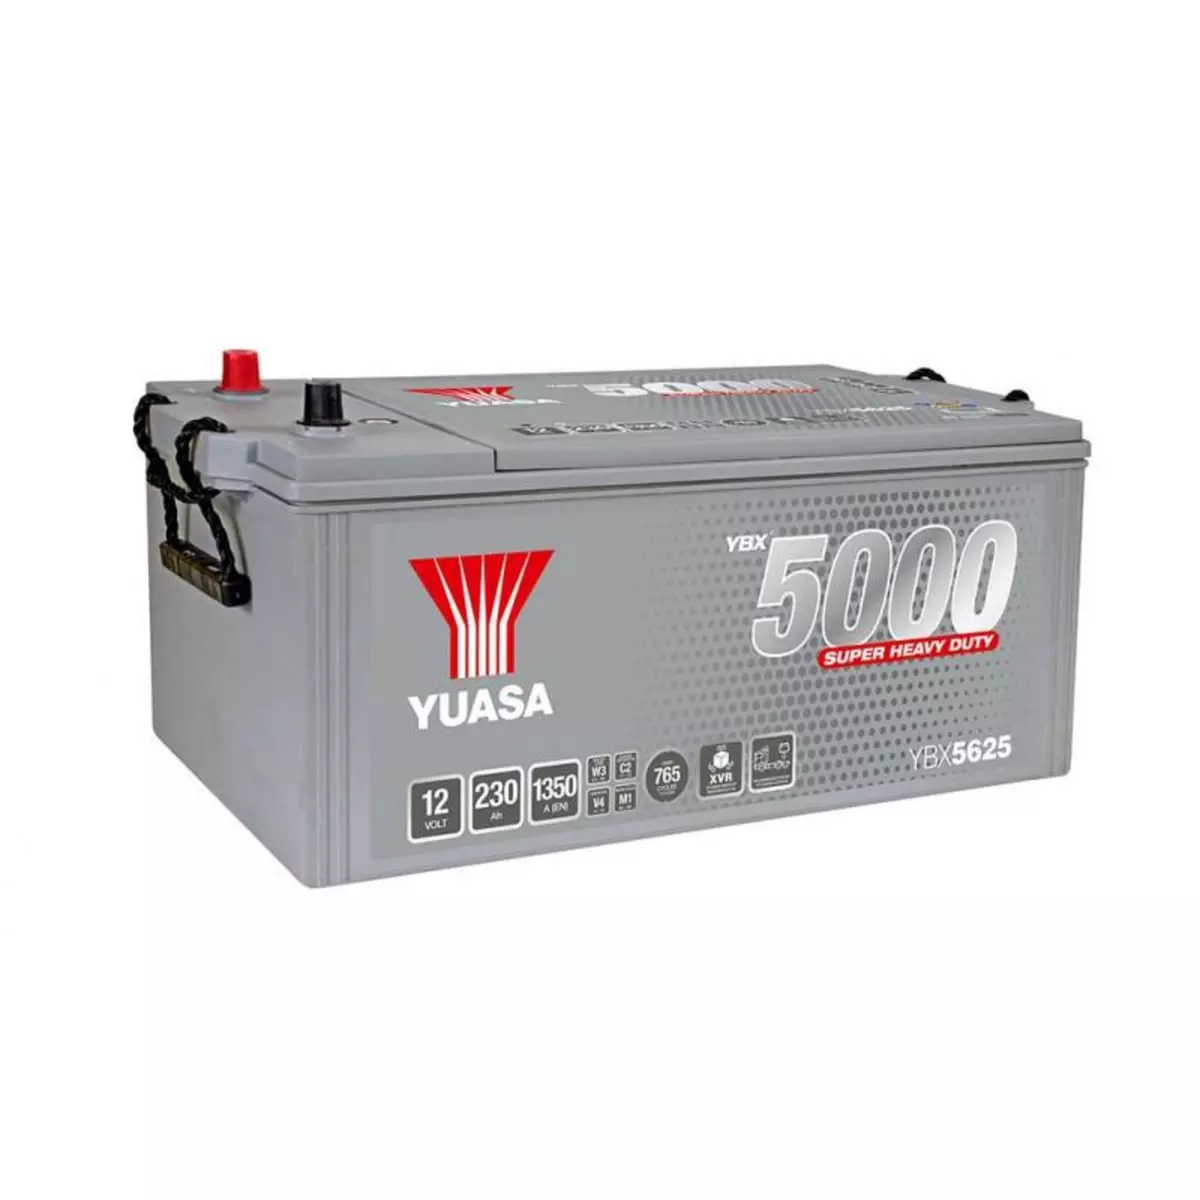 YUASA Batterie YUASA SHD YBX5625 12V 230AH 1350A SMF BM16